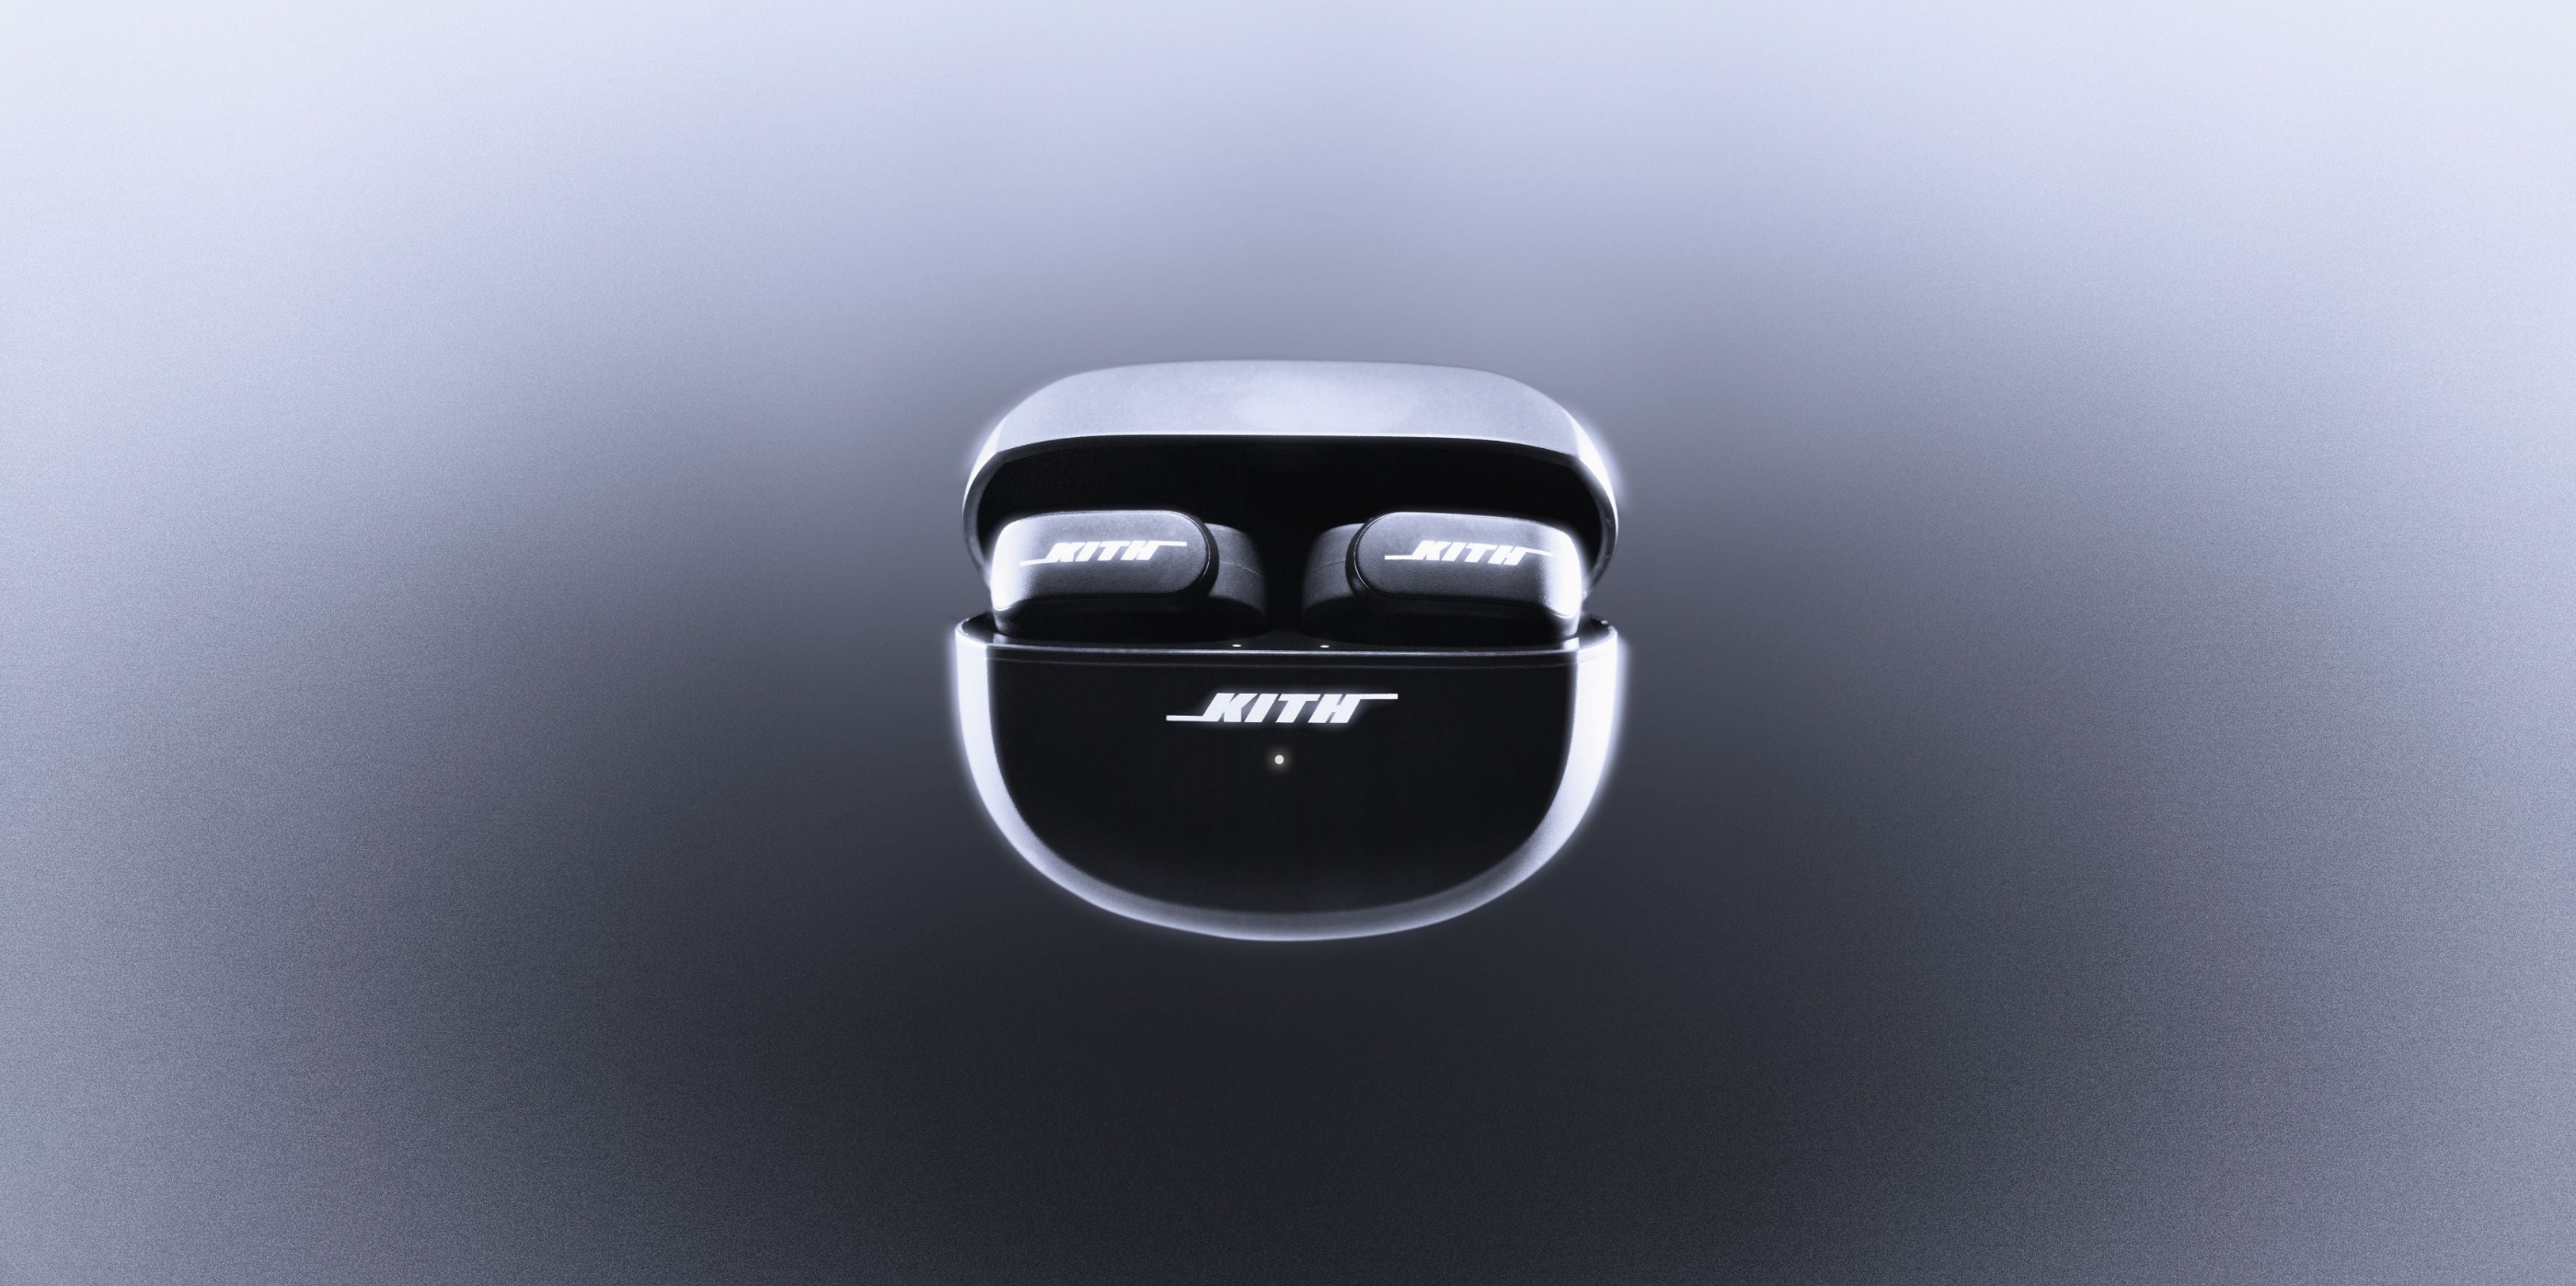 Firmy Bose i Kith zaprezentowały słuchawki douszne Ultra Open Earbuds o nietypowym designie i cenie 300 dolarów.